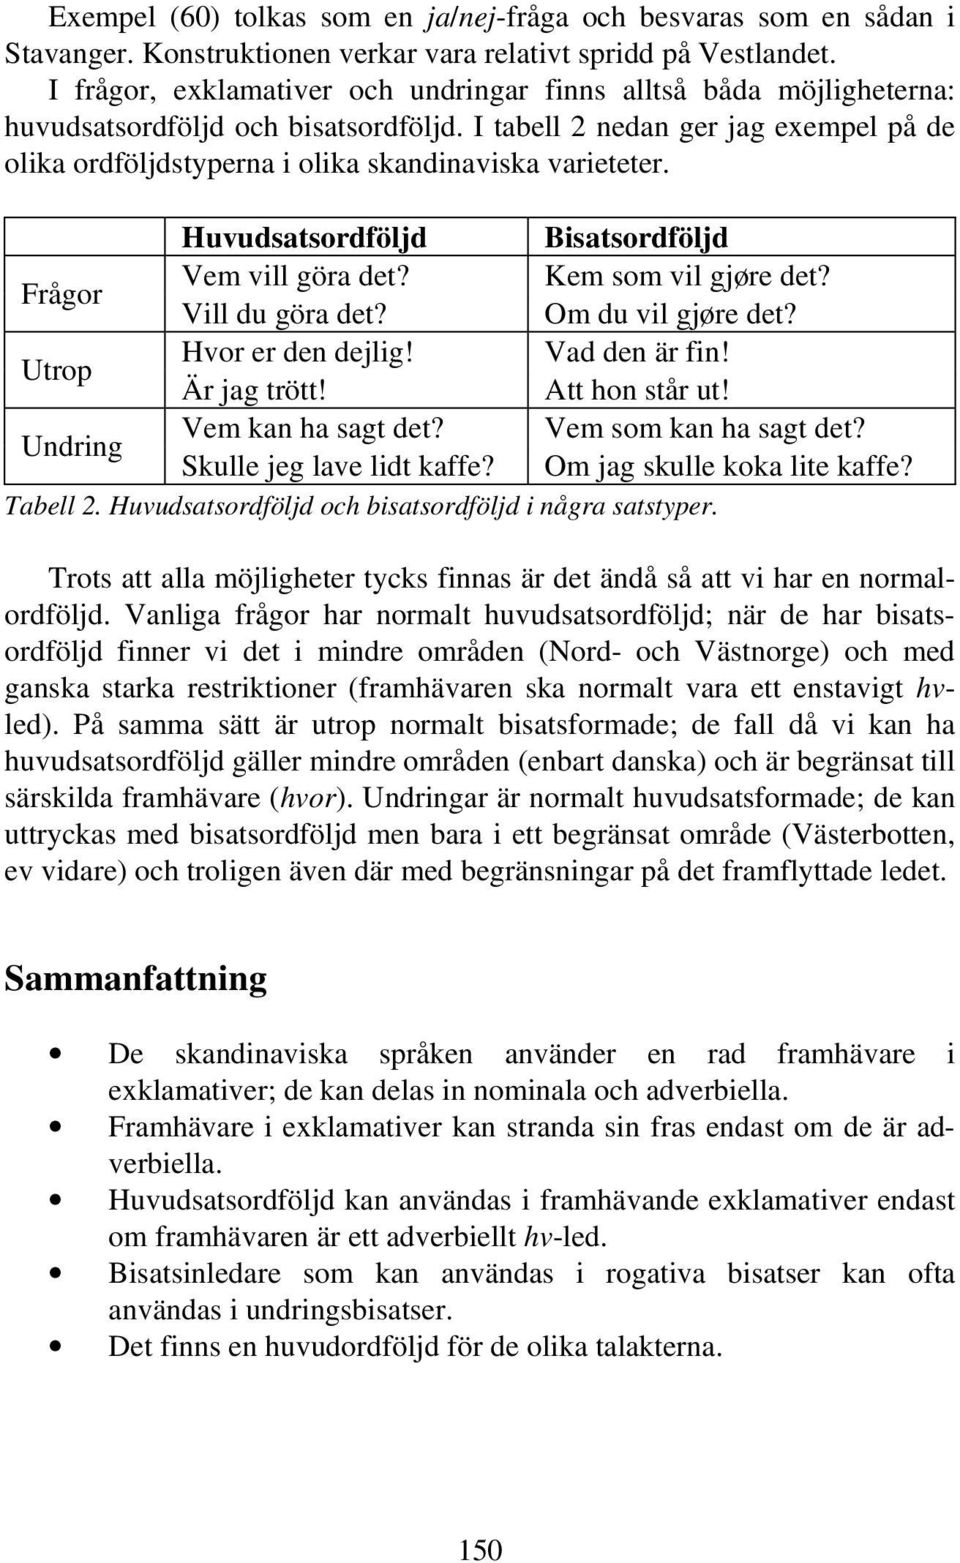 I tabell 2 nedan ger jag exempel på de olika ordföljdstyperna i olika skandinaviska varieteter. Huvudsatsordföljd Bisatsordföljd Frågor Vem vill göra det? Kem som vil gjøre det? Vill du göra det?